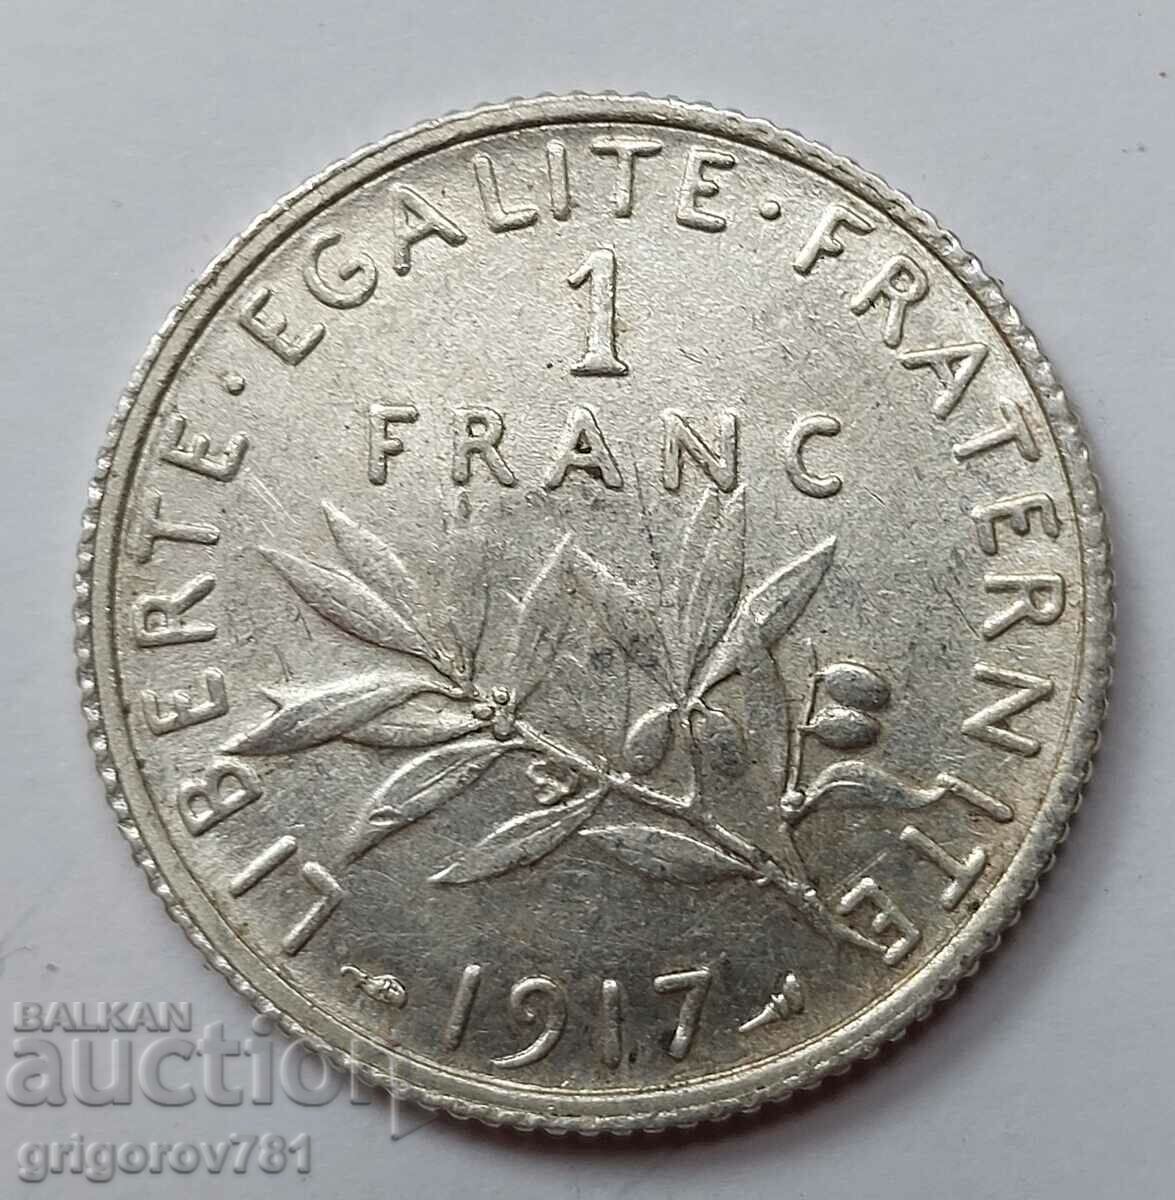 Ασημένιο 1 φράγκου Γαλλία 1917 - ασημένιο νόμισμα №16